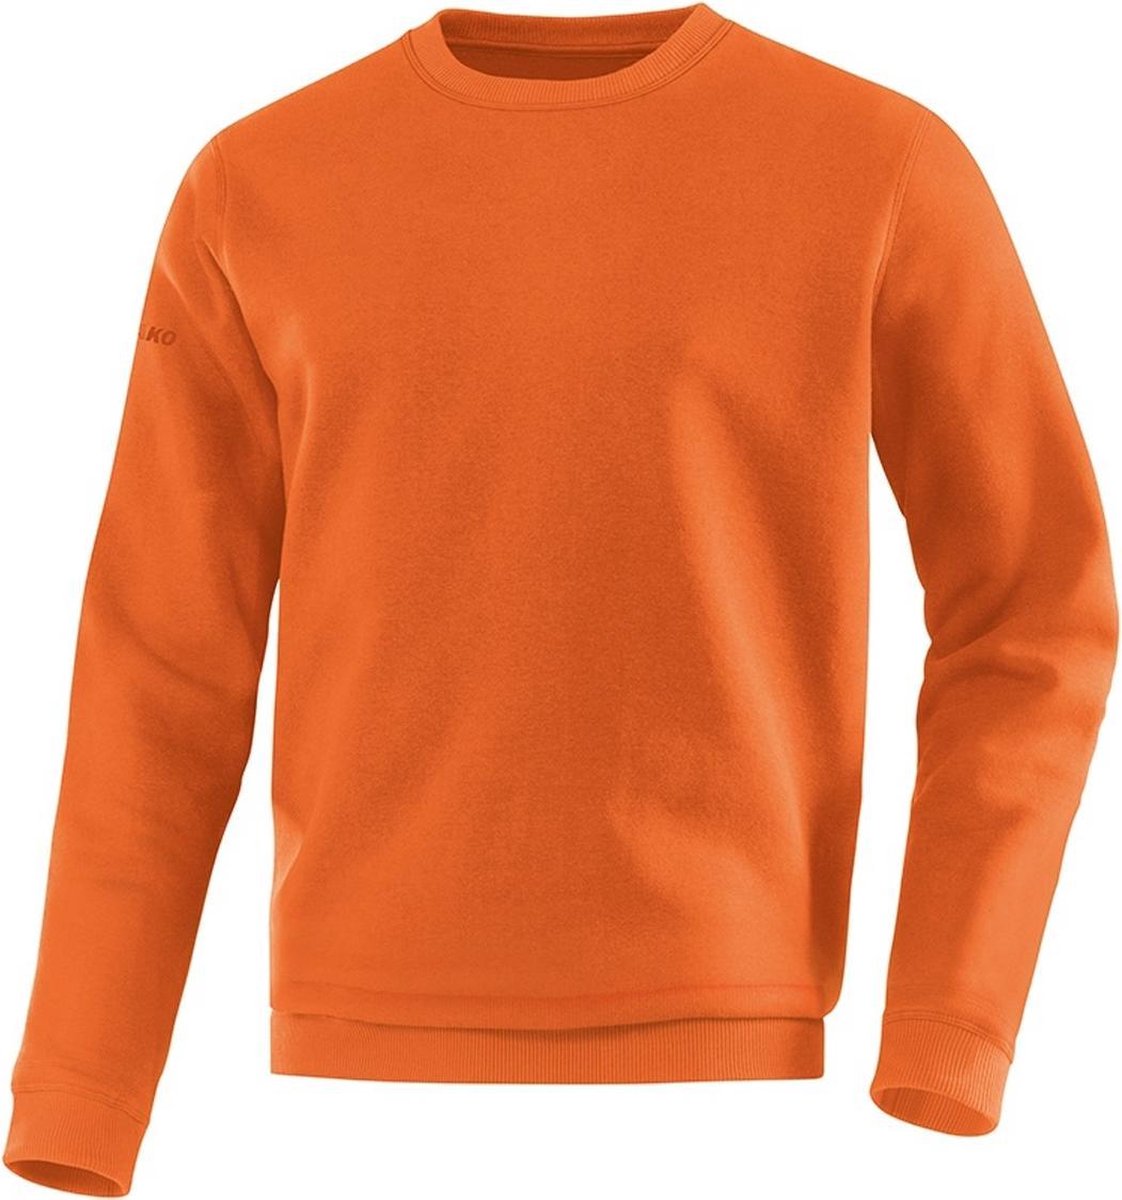 Jako - Sweater Team Junior - Sweater Junior Oranje - 152 - fluooranje